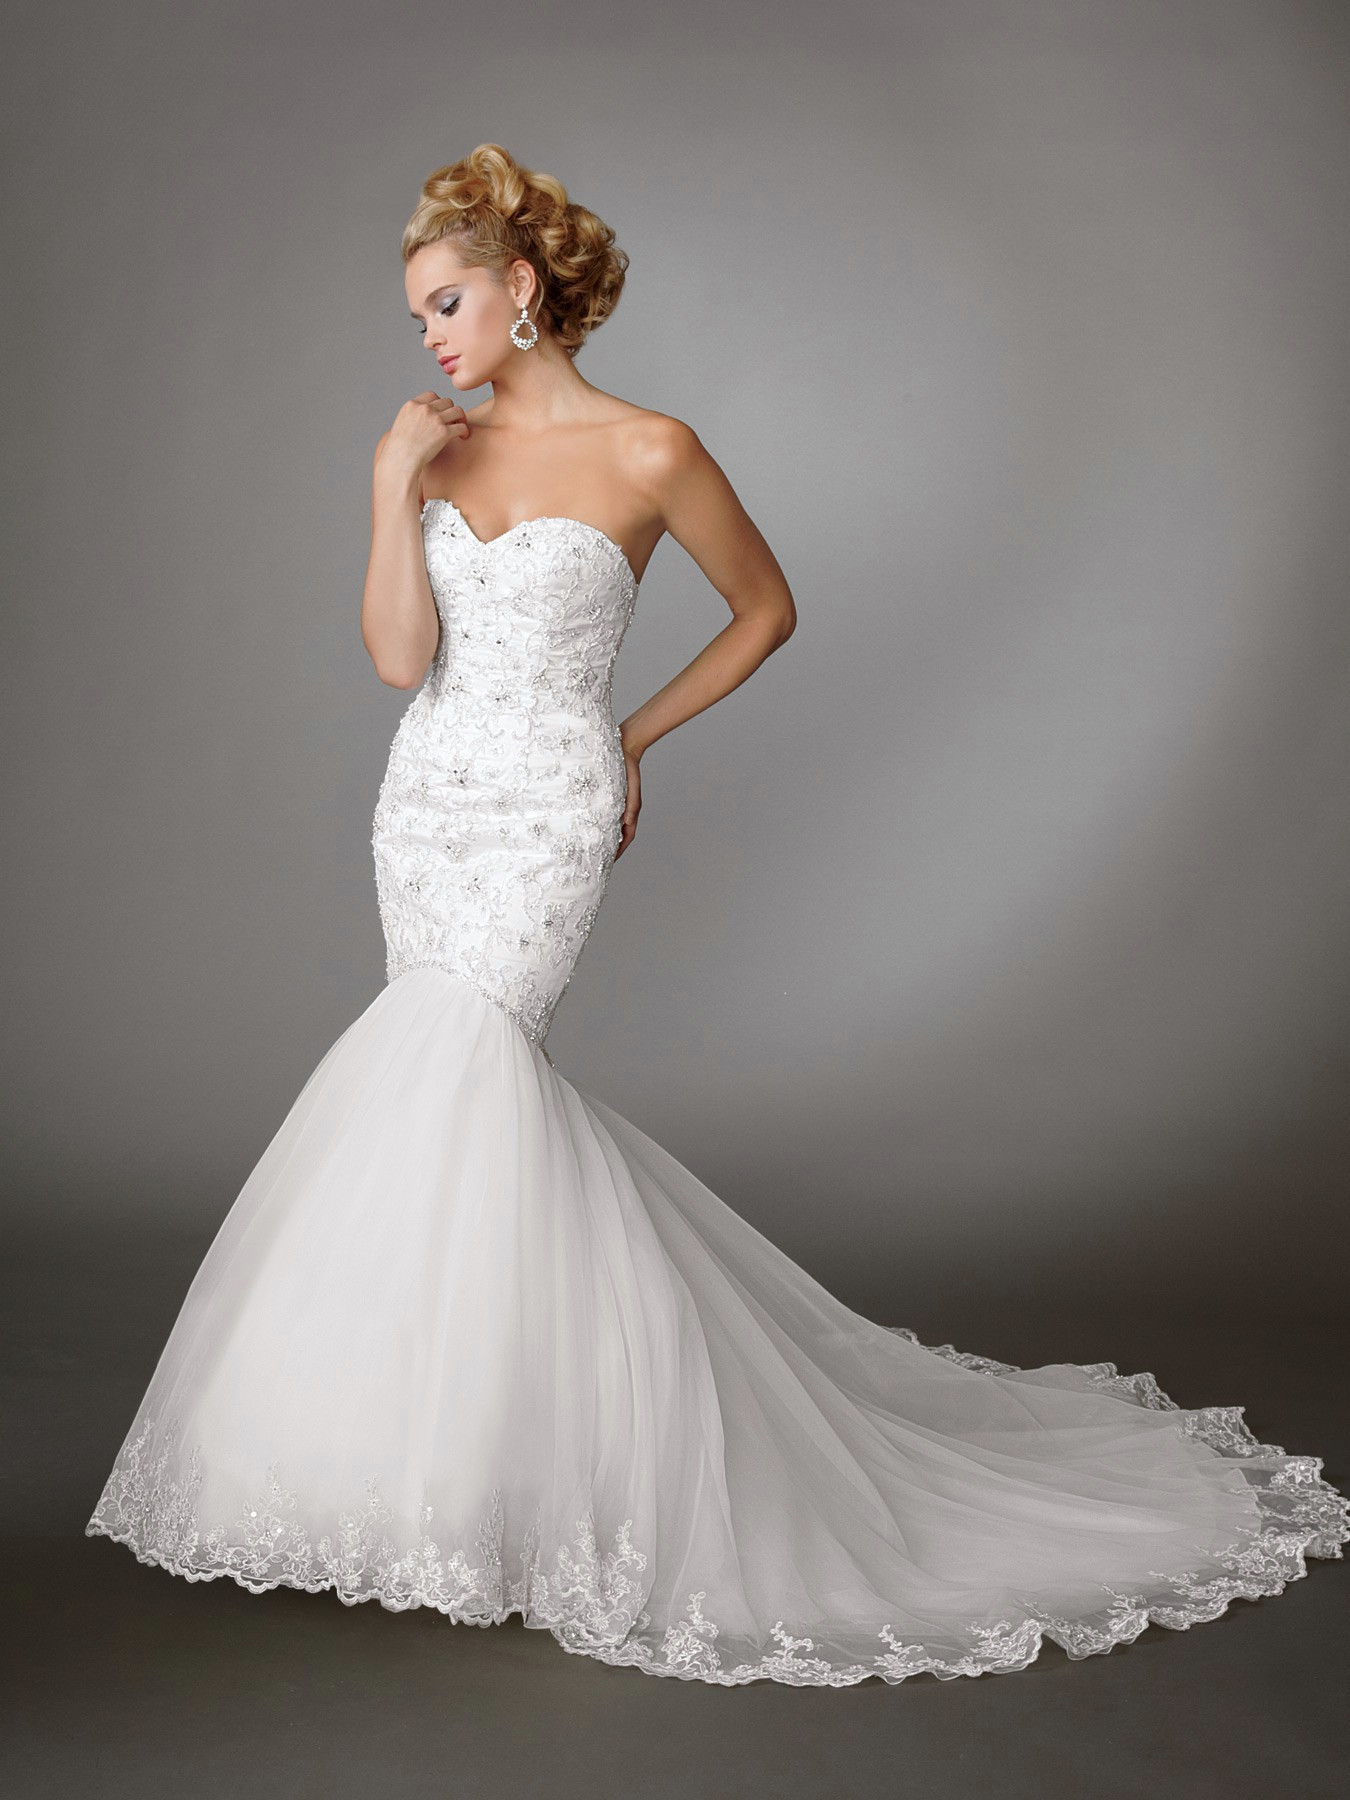 Mermaid Wedding Dresses
 Mermaid Wedding Dresses – An Elegant Choice For Brides